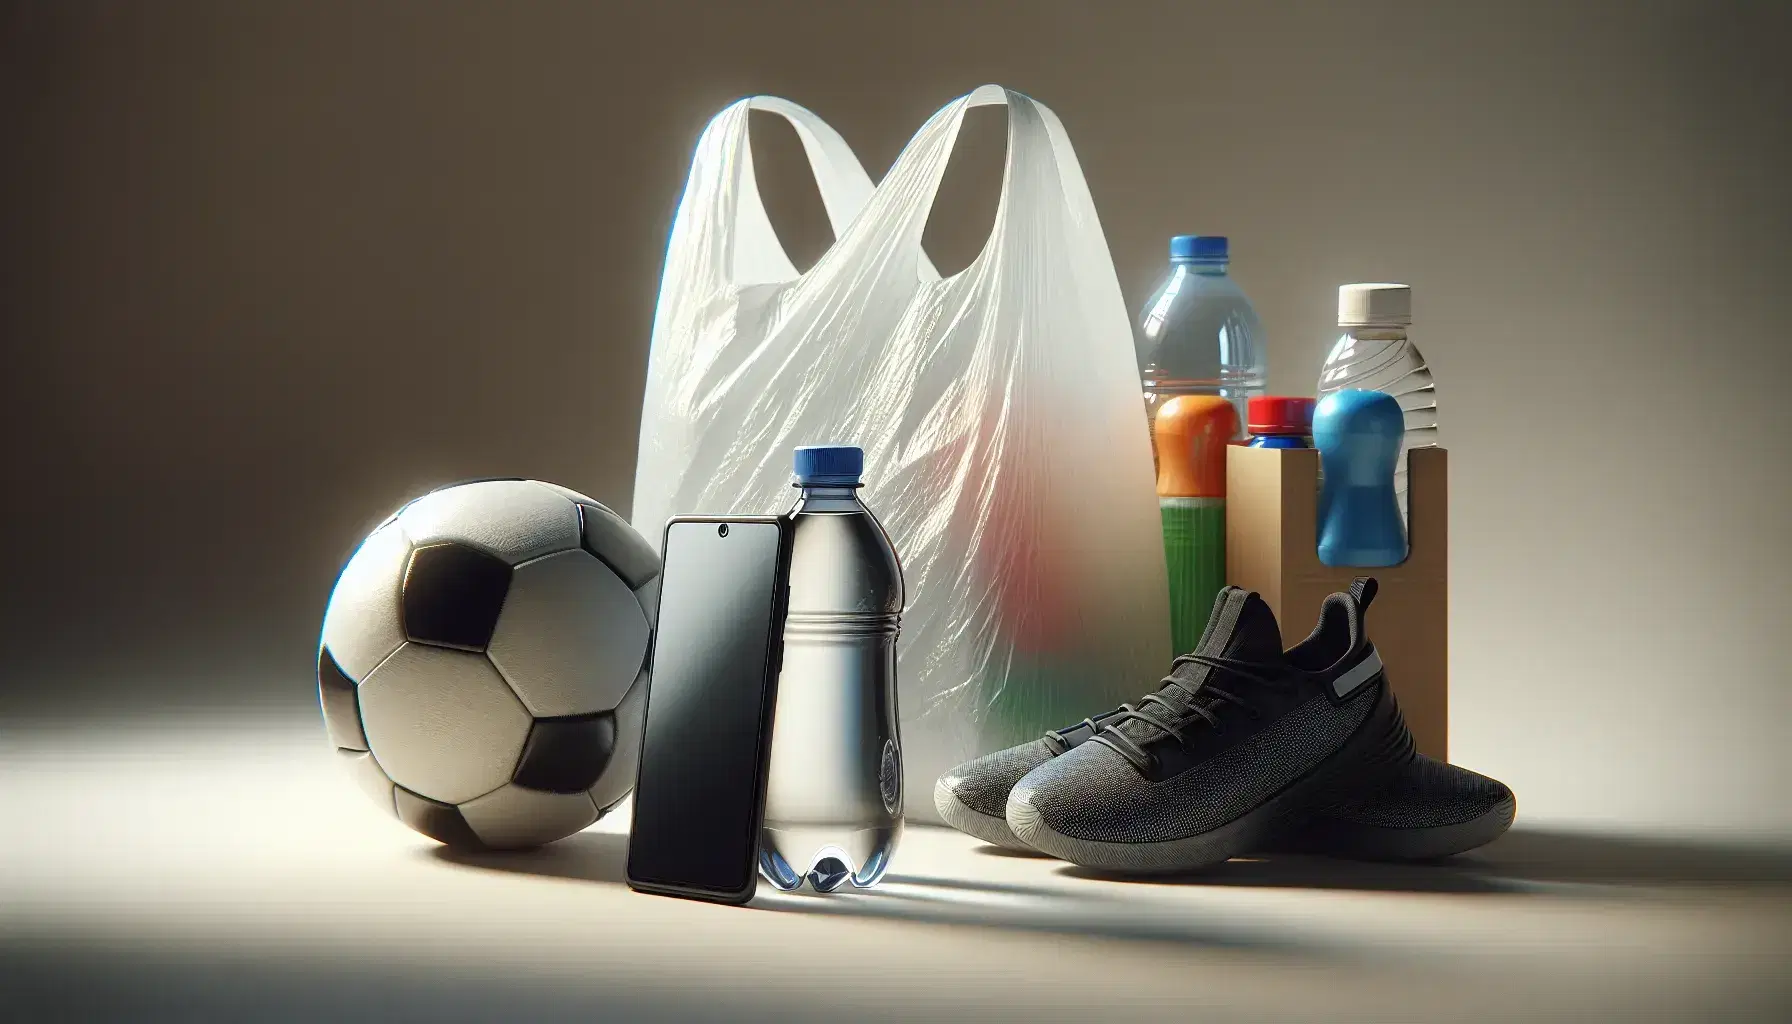 Colección de objetos cotidianos con botella de plástico transparente, bolsa de supermercado arrugada, móvil con funda negra, balón de fútbol y zapatillas deportivas.